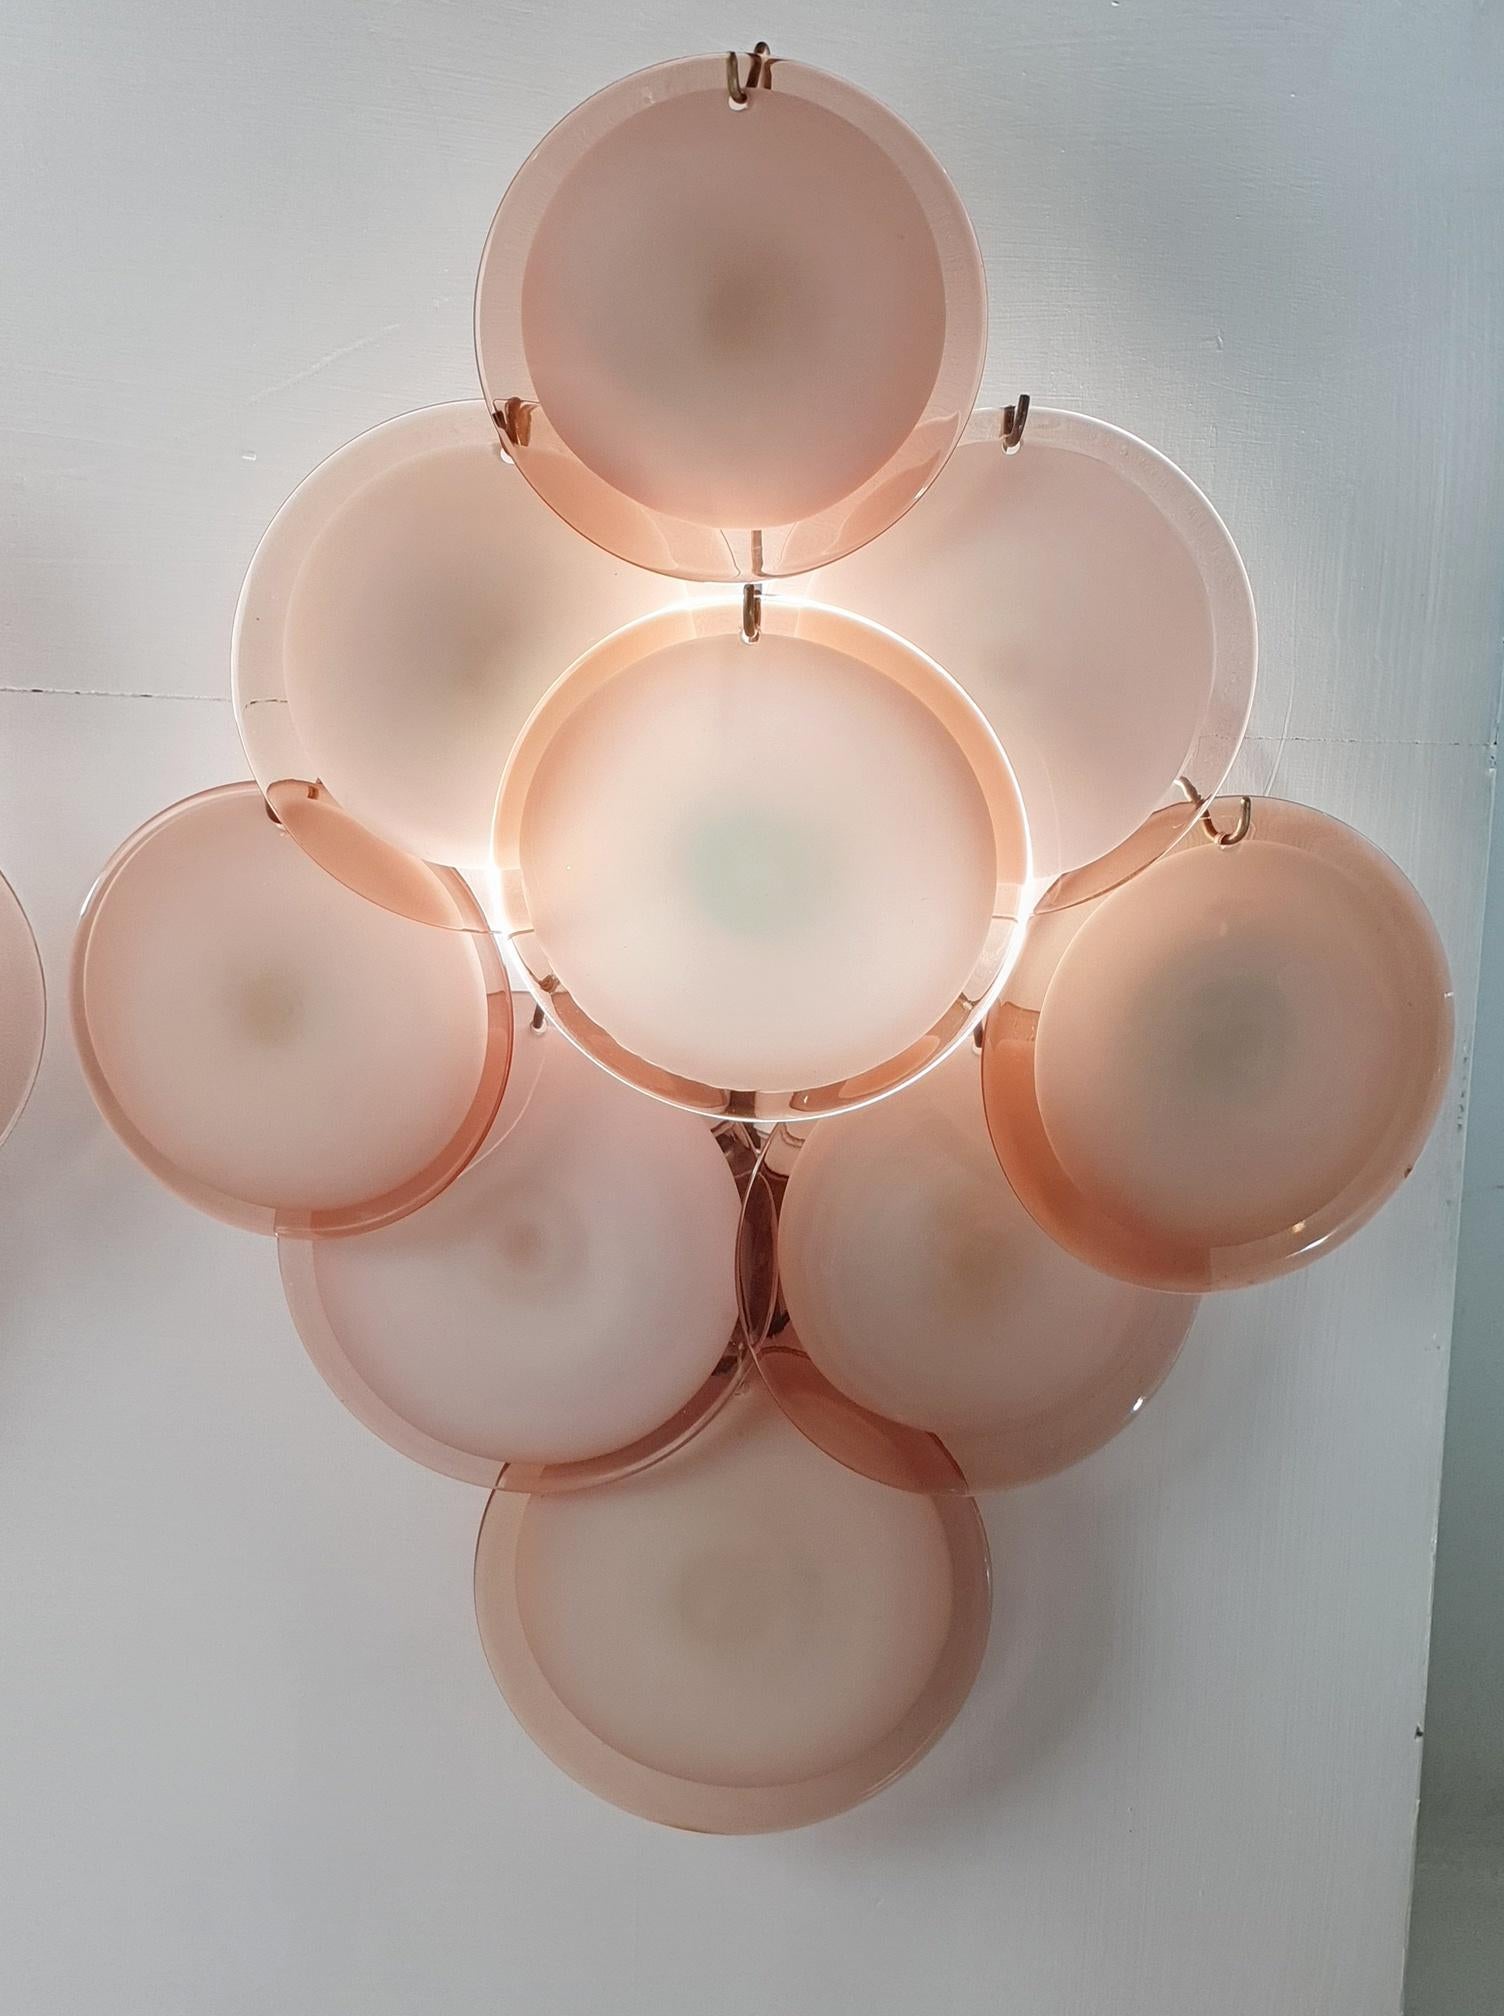 Paire d'appliques murales extra-larges de Vistosi Murano, dans les tons ambre/rose. Les disques en verre sont fabriqués à la main avec un centre blanc opaque recouvert d'un verre transparent ambre/rose. Chaque applique neuf disques de taille et